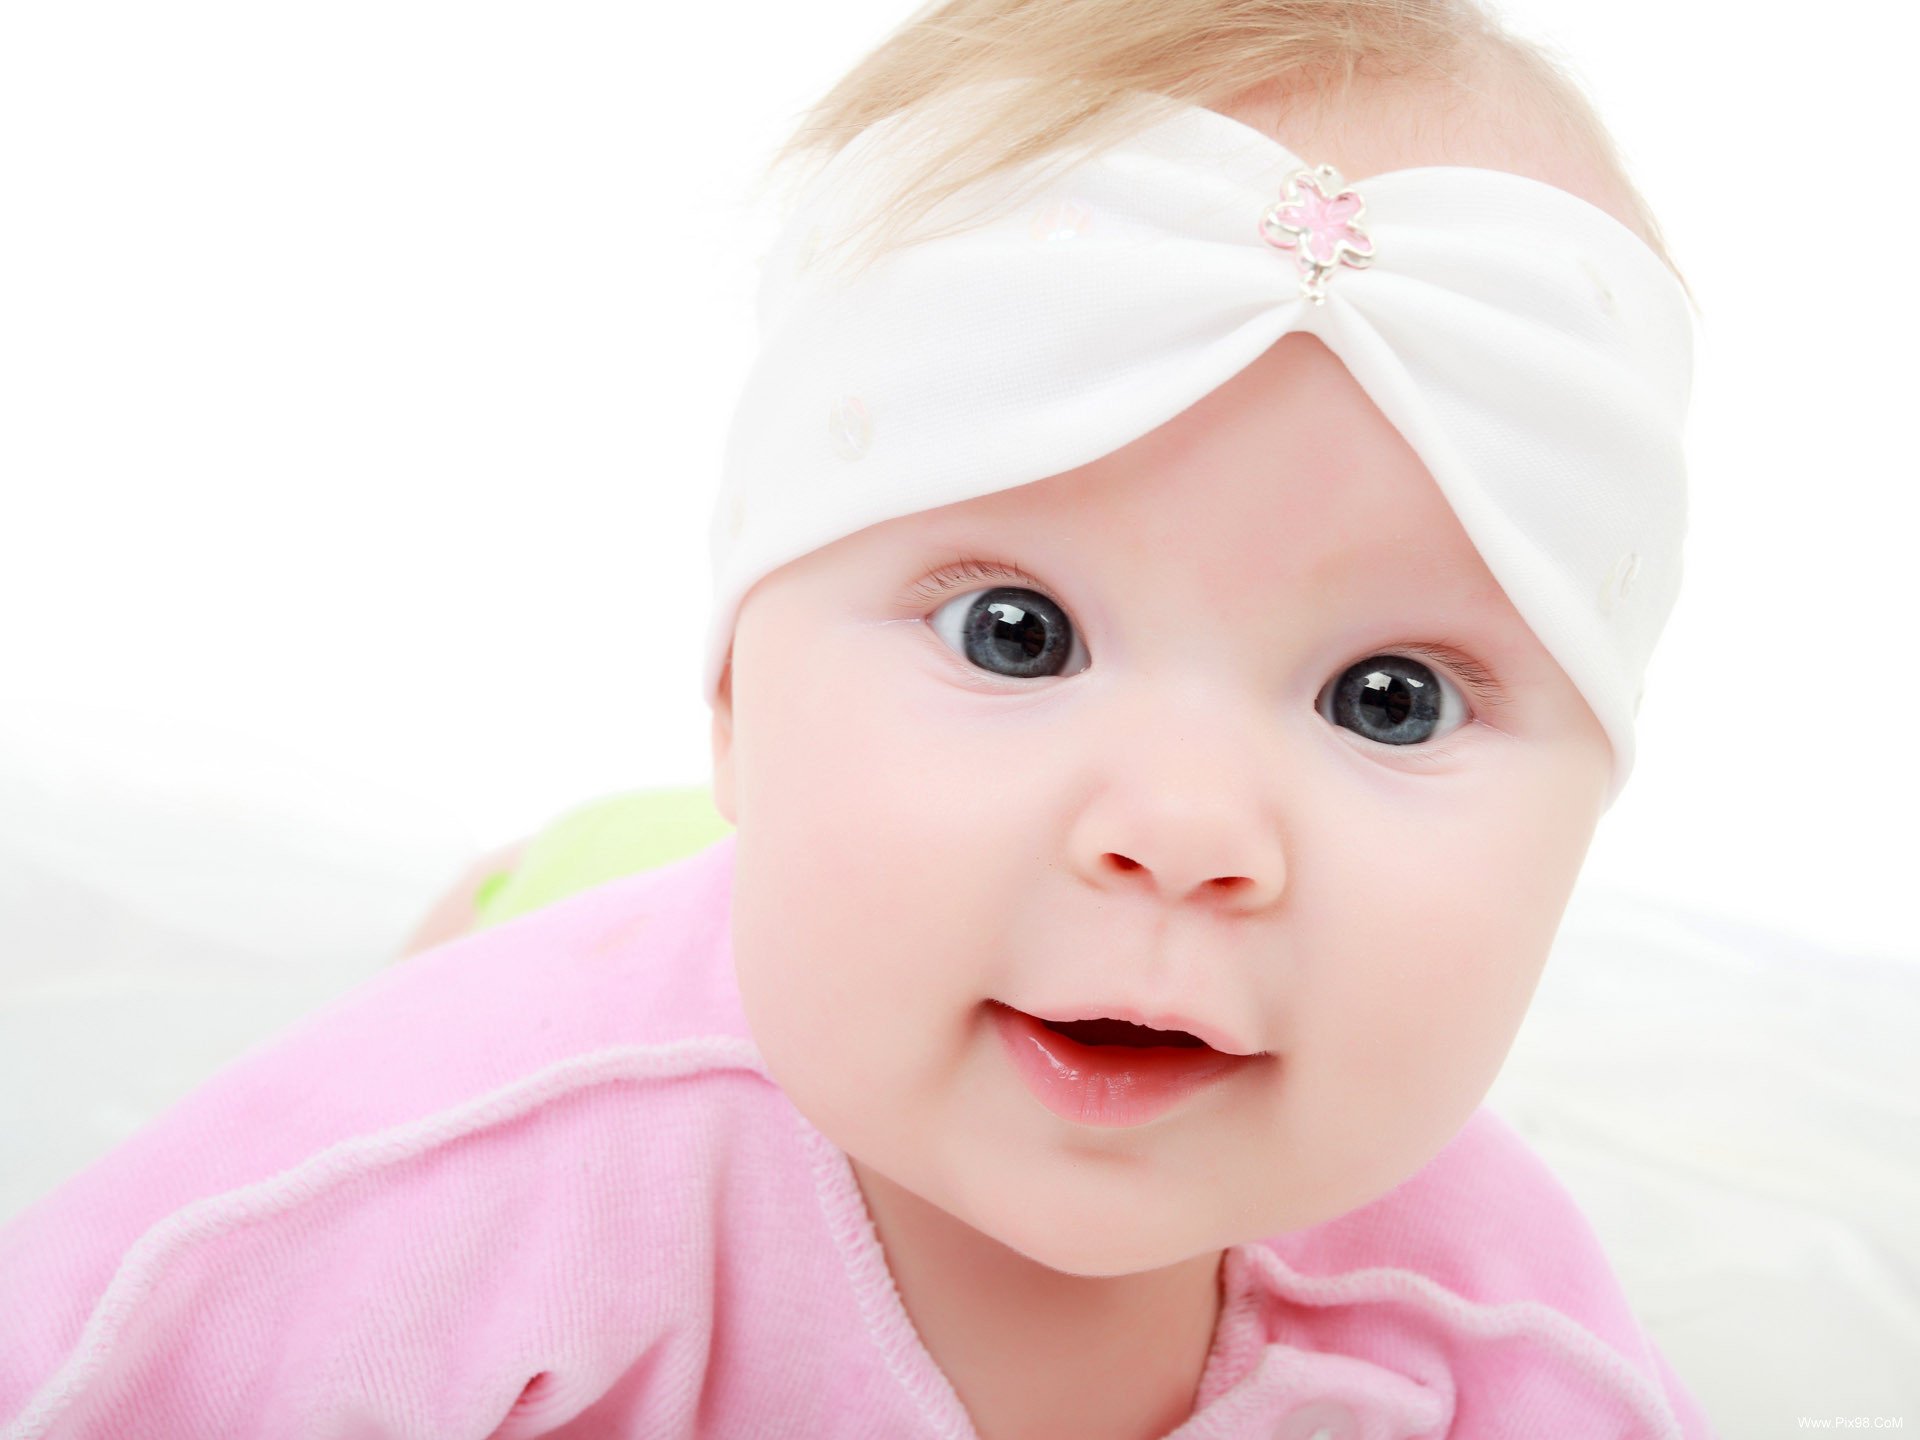 عکس های زیباترین نوزادان جهان | عکس نوزاد زیبا و گوگولی